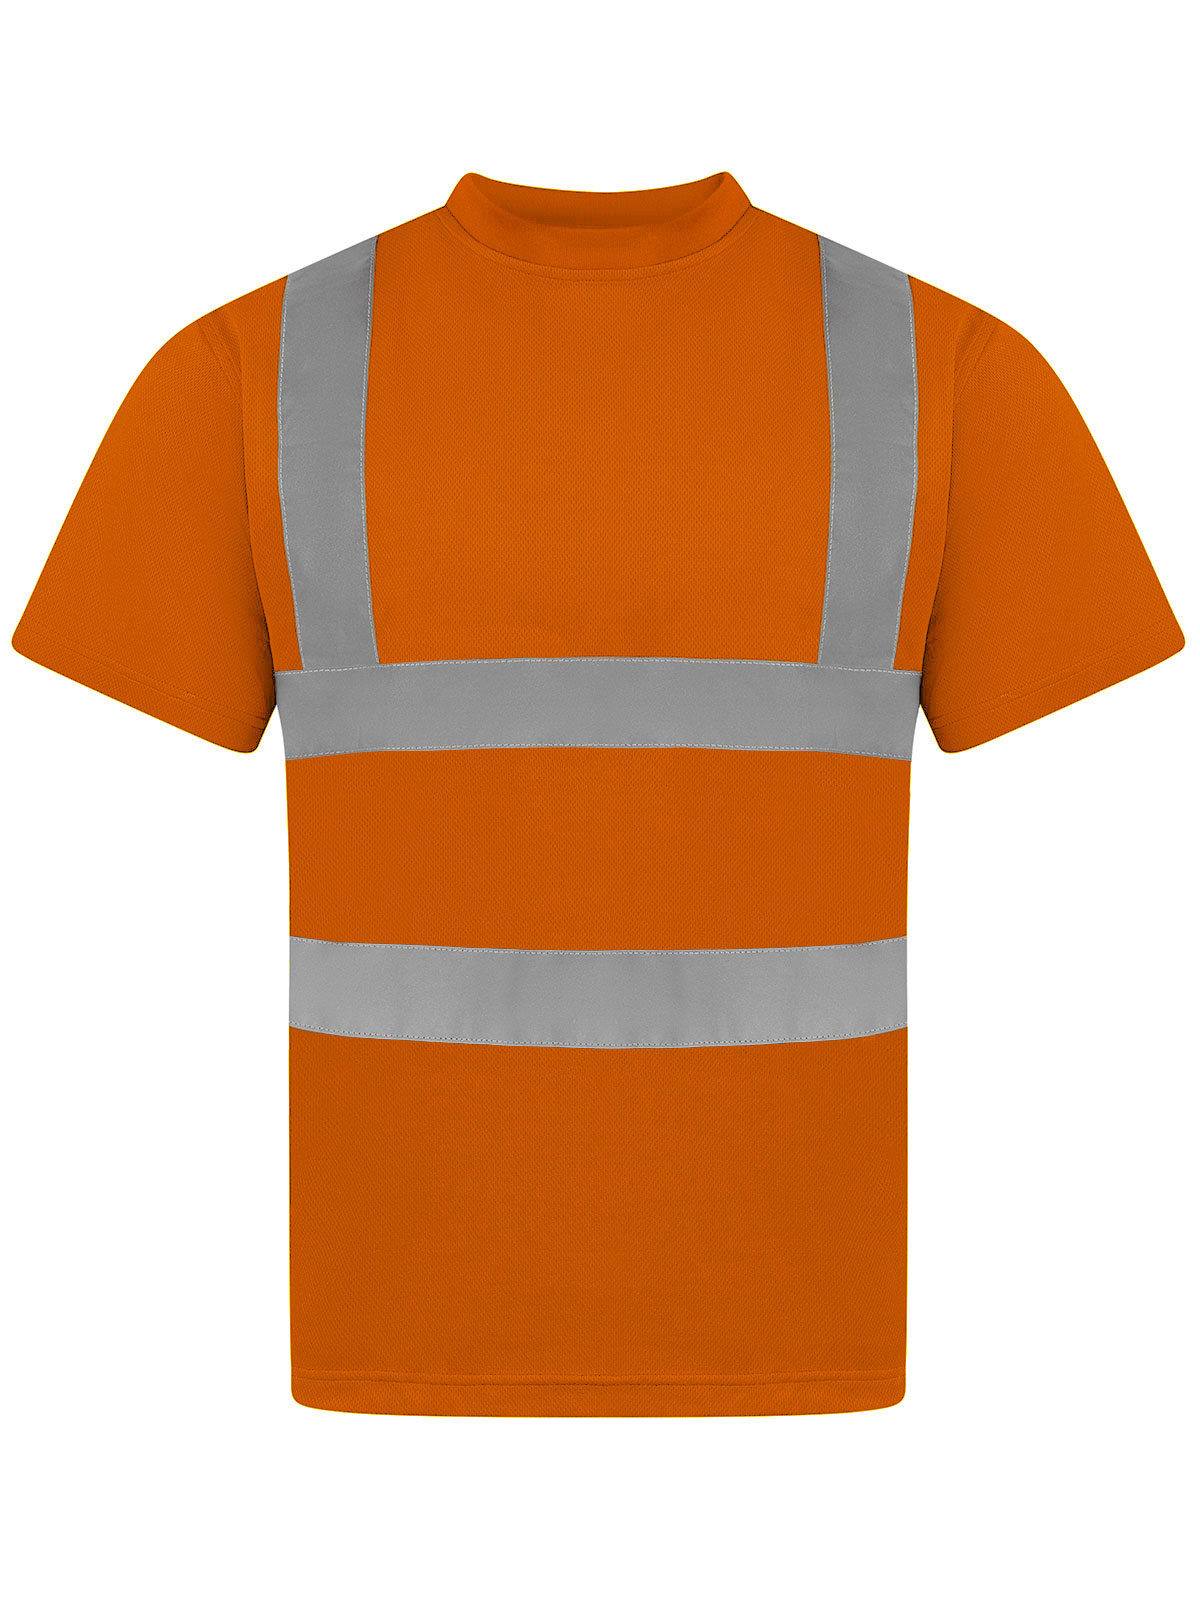 hi-viz-t-shirt-orange.webp